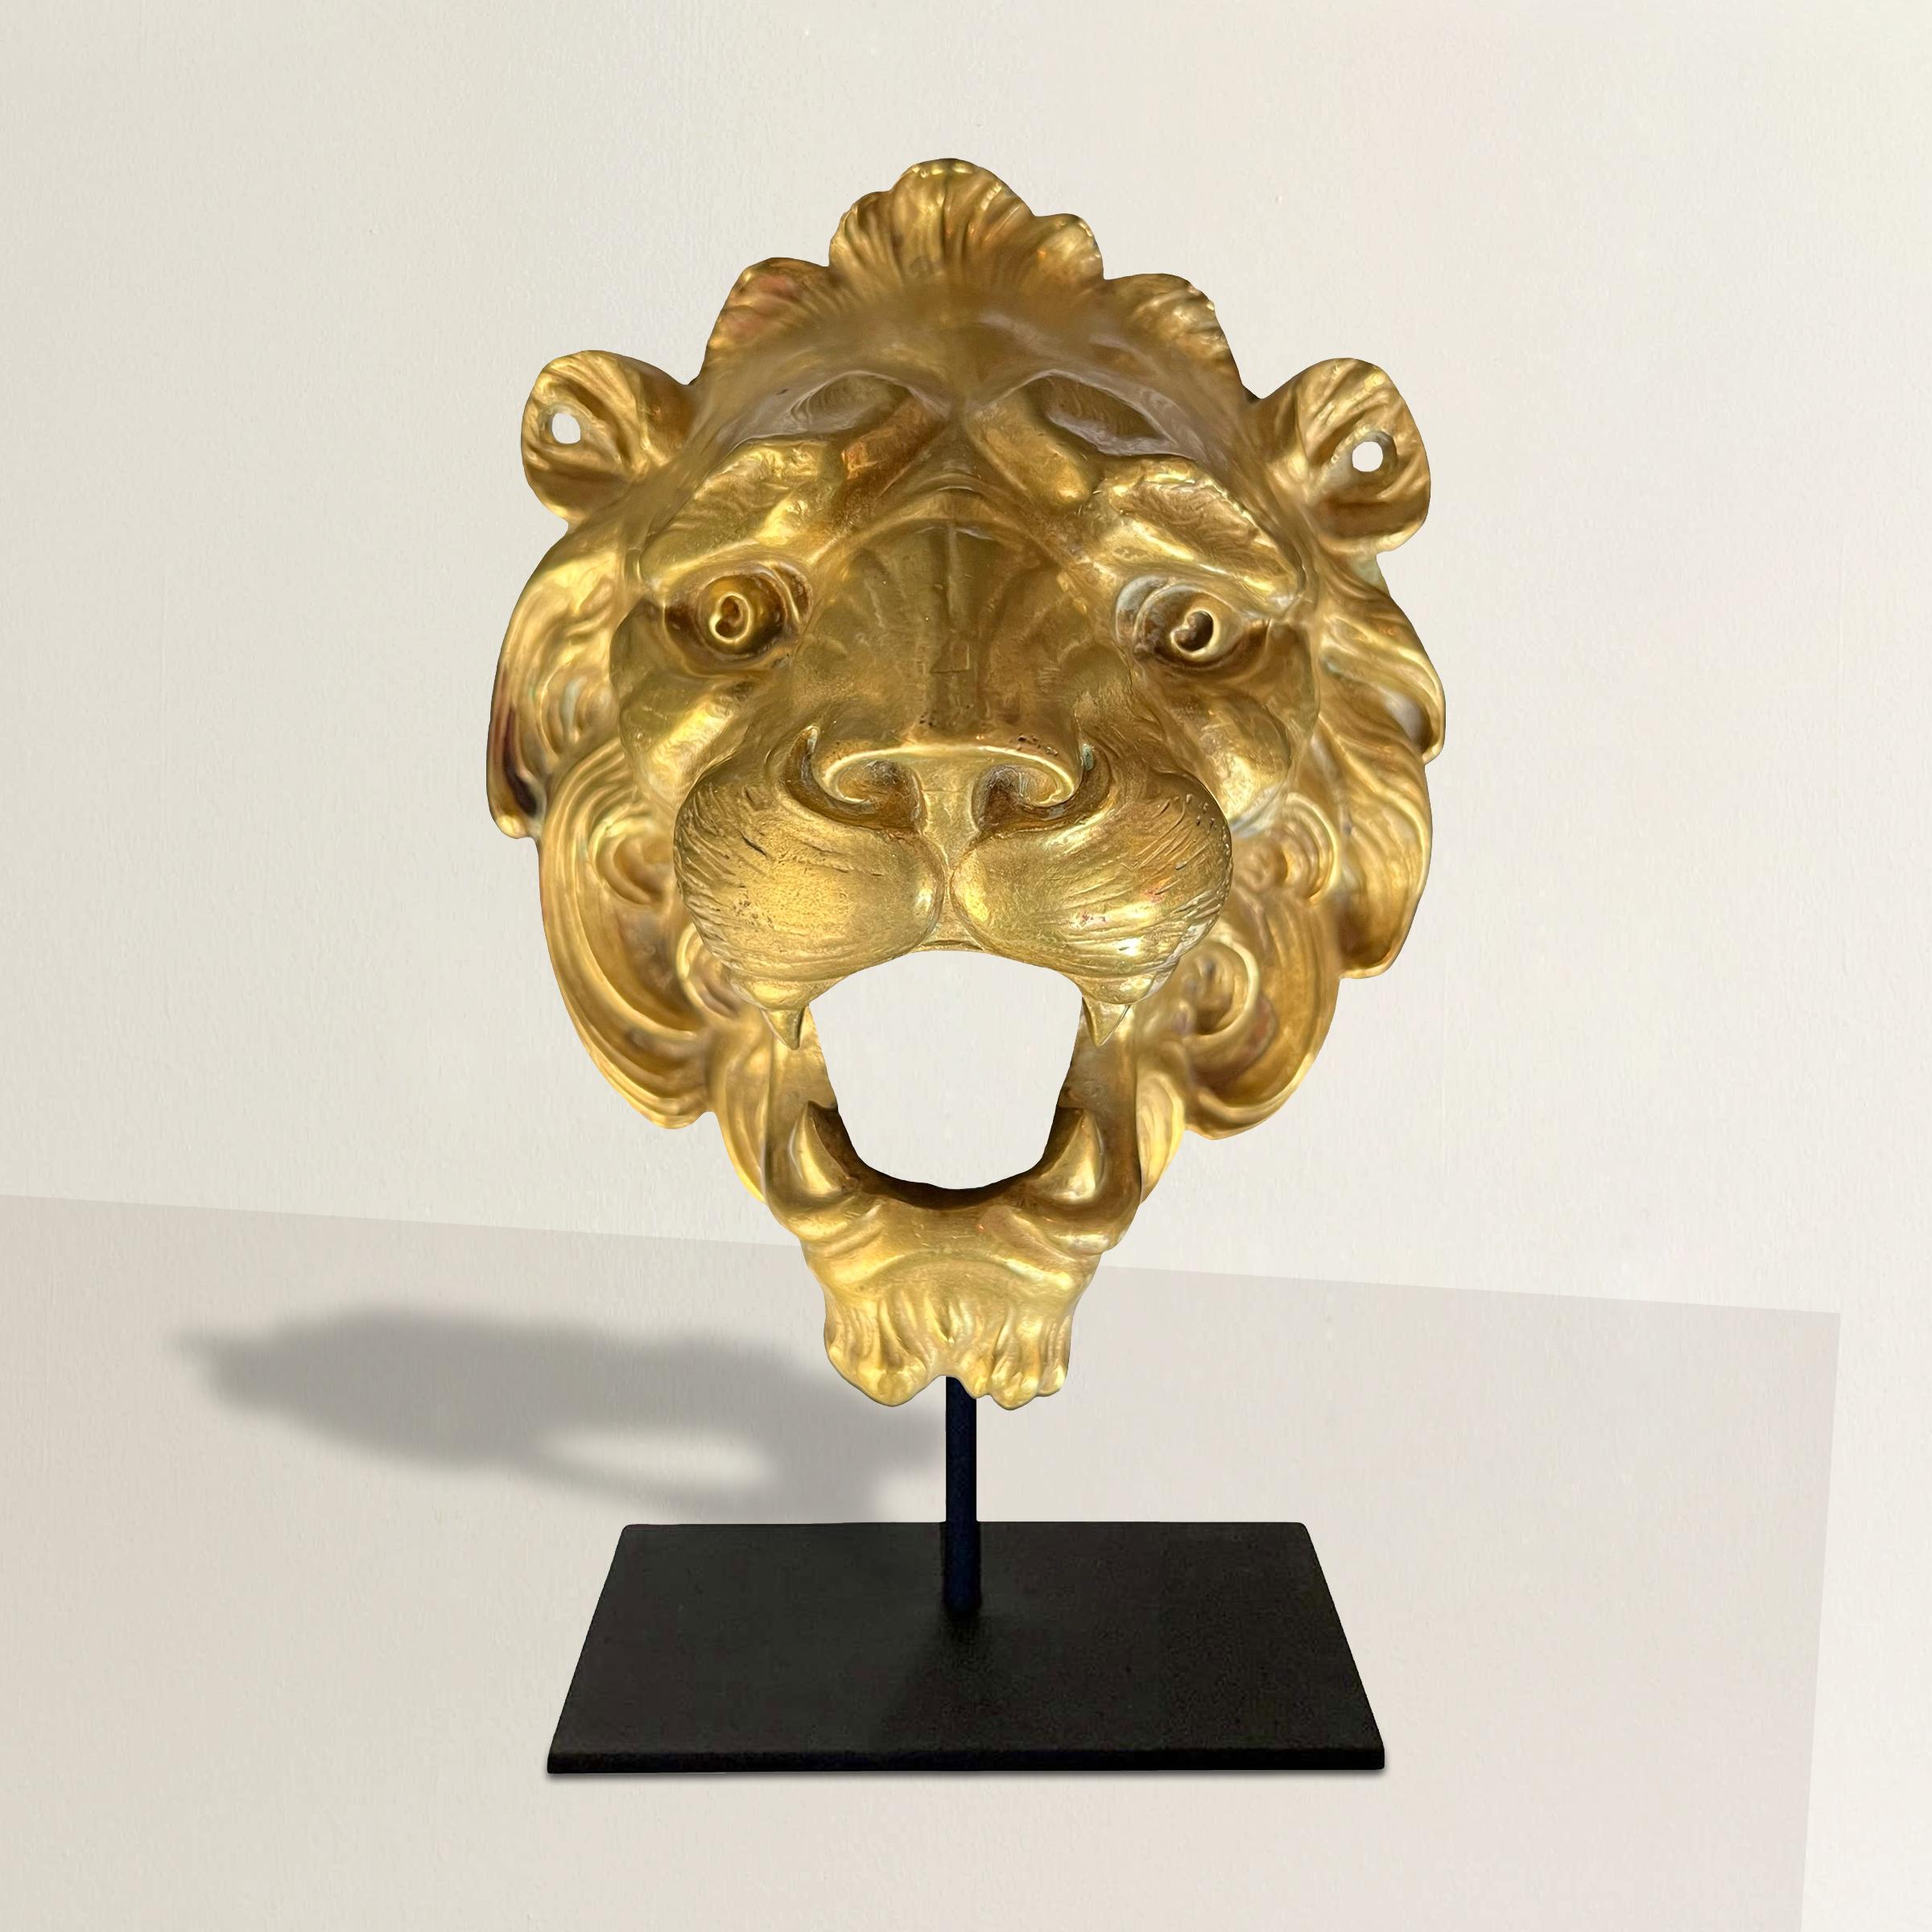 Sehen Sie sich dieses exquisite architektonische Fragment eines vergoldeten Löwenkopfes aus Bronze aus dem 19. Jahrhundert an, ein faszinierendes Relikt aus einer vergangenen Epoche. Diese fesselnde Figur zeigt einen majestätischen Löwen mit